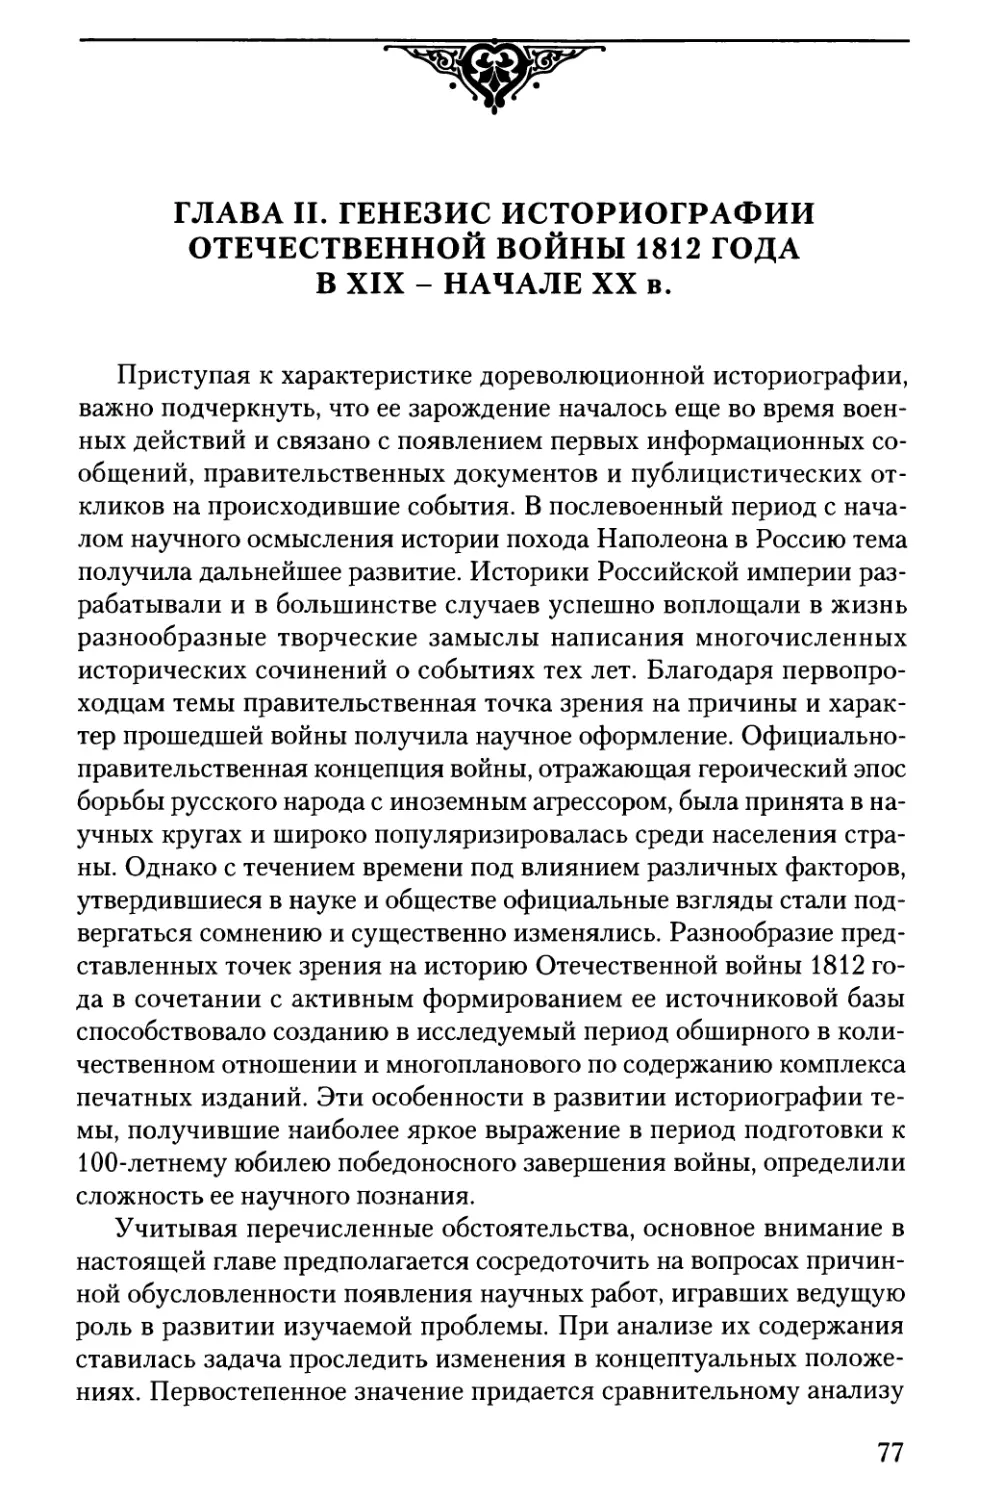 Глава II. Генезис историографии Отечественной войны 1812 года в XIX - начале XX в.